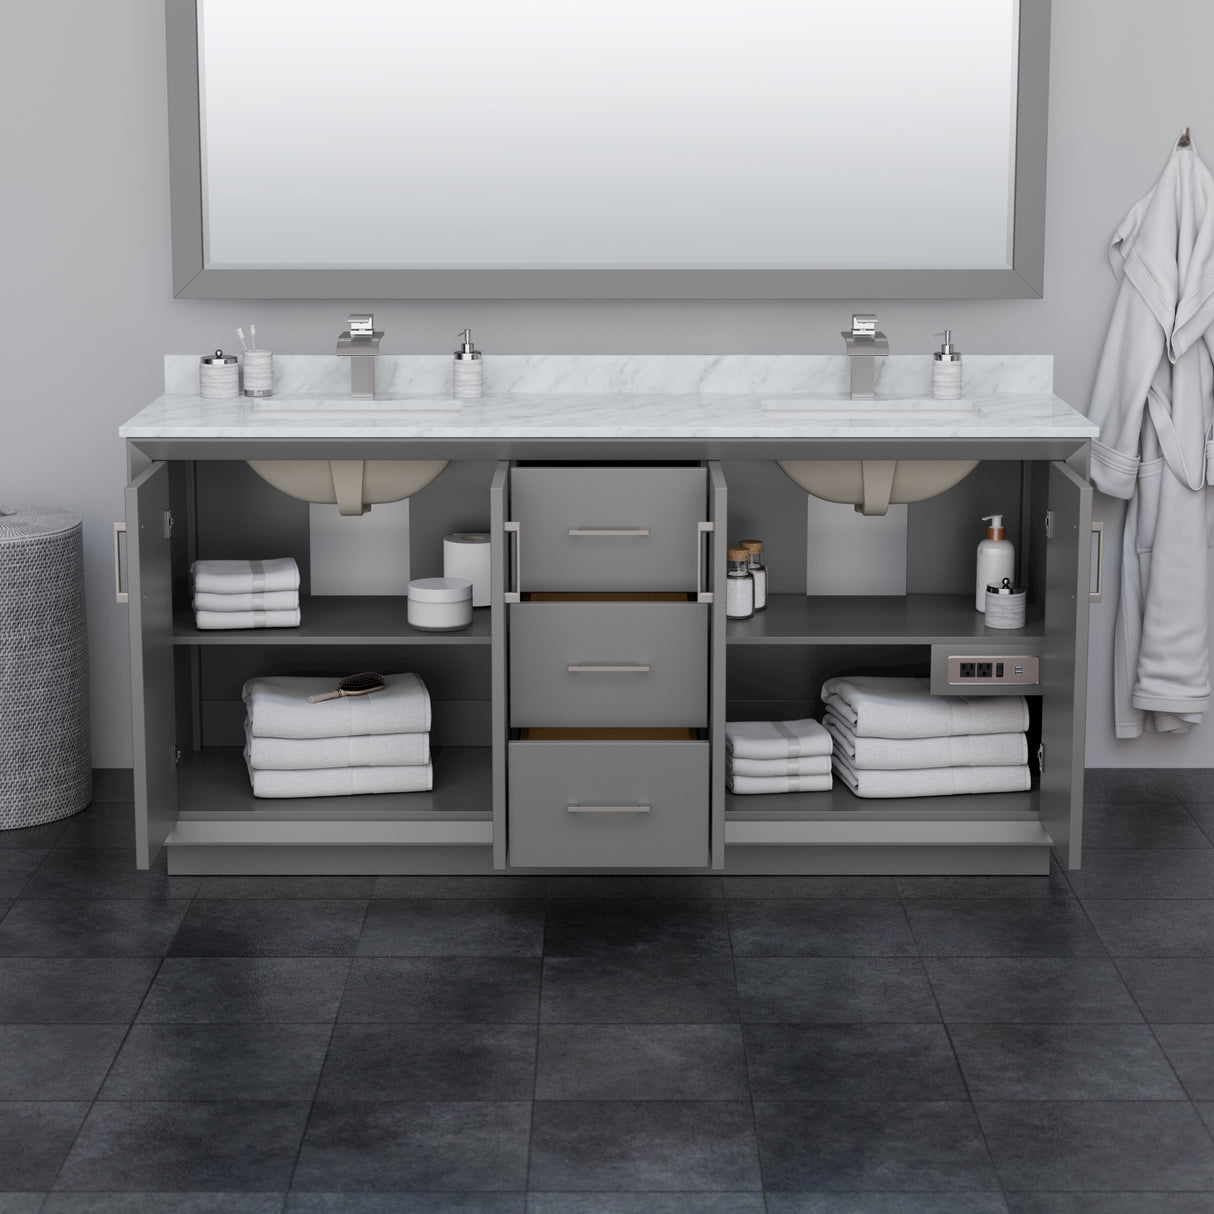 Strada 72 Inch Double Bathroom Vanity in Dark Gray No Countertop No Sink Brushed Nickel Trim 70 Inch Mirror